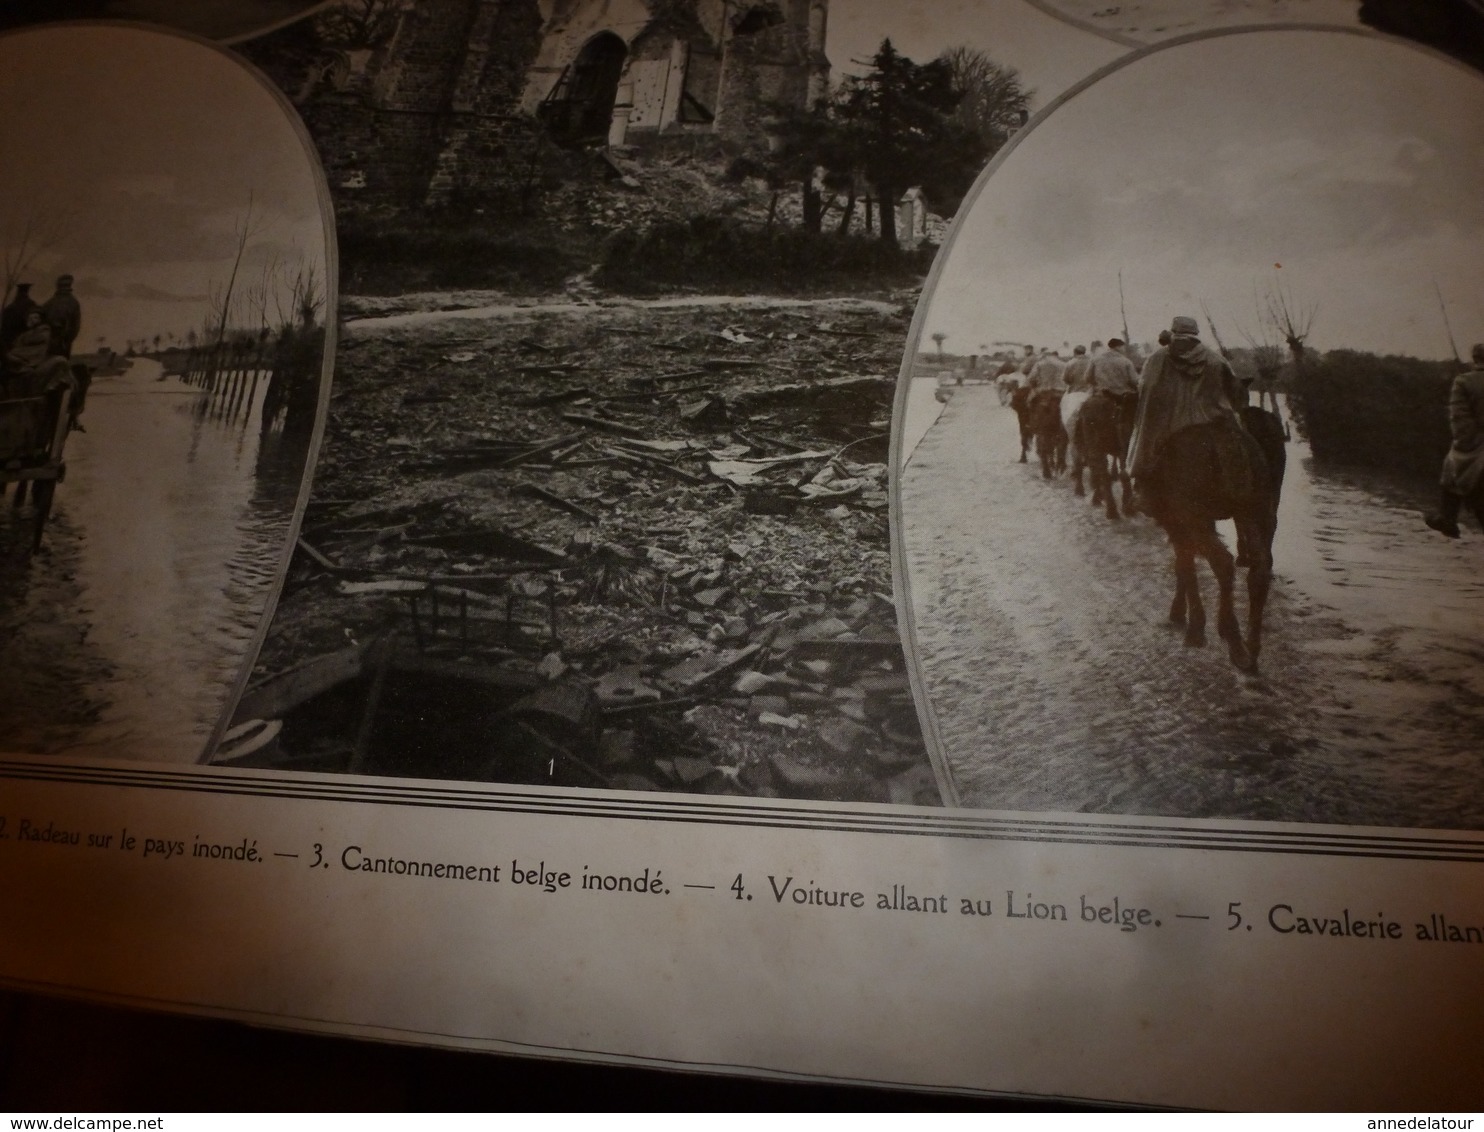 1914-1918 LA GUERRE en Yser->Mitrailleuse belge trainée par des chiens;Zouaves;Epluchage pommes de terre;Elverdinghe;etc